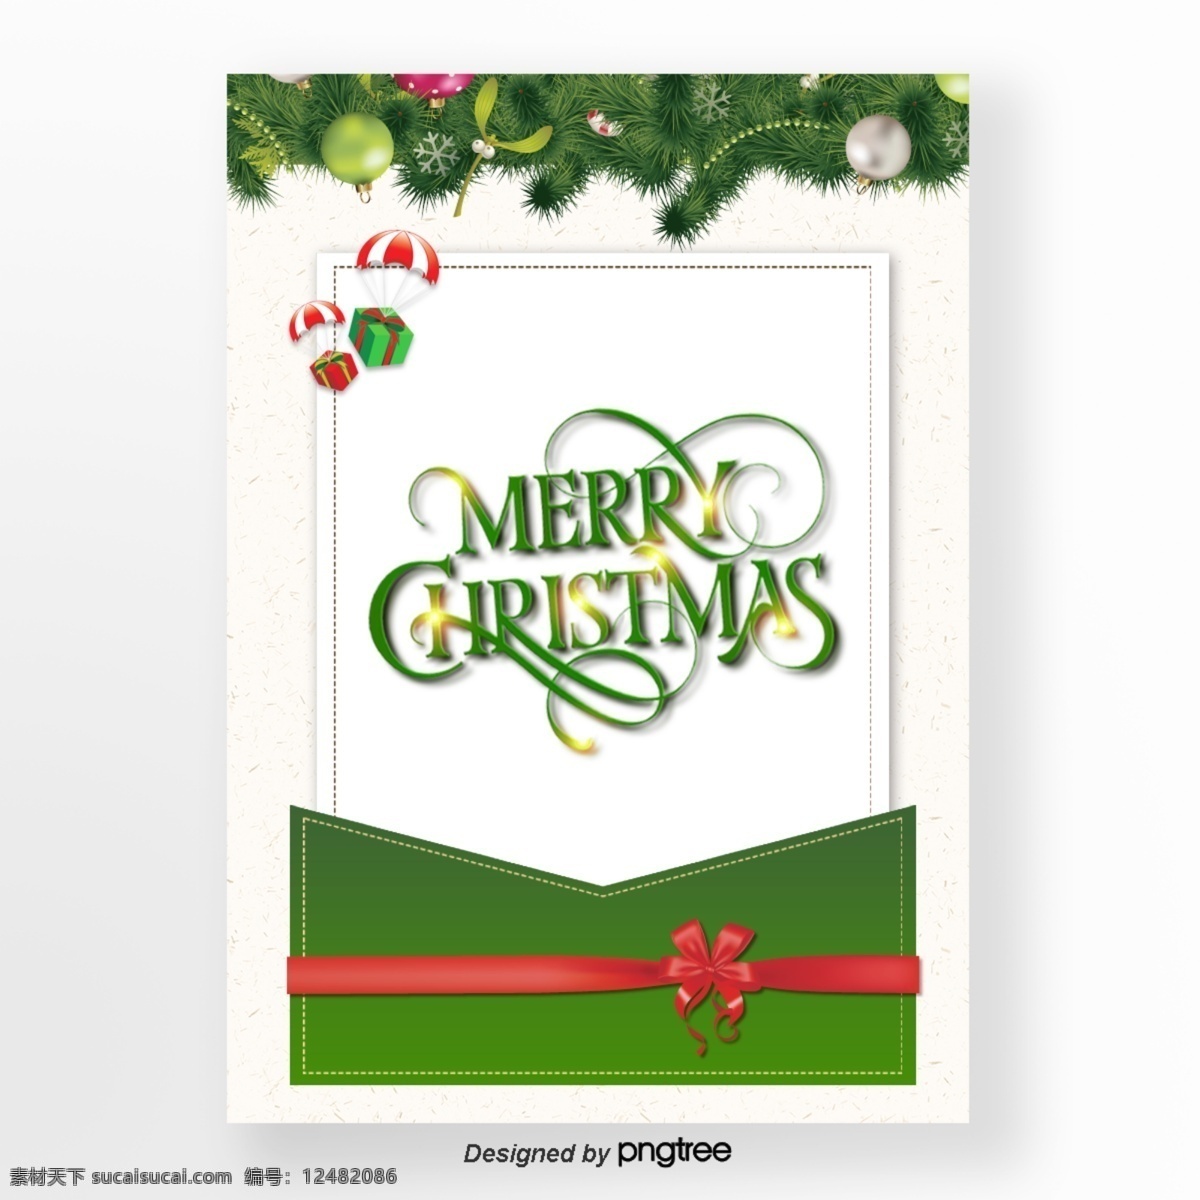 绿色 精巧 圣诞 节信 信封 邀请 海报 merry christmas 蝴蝶结 礼物 松树树枝 五彩缤纷 邀请函 圣诞节